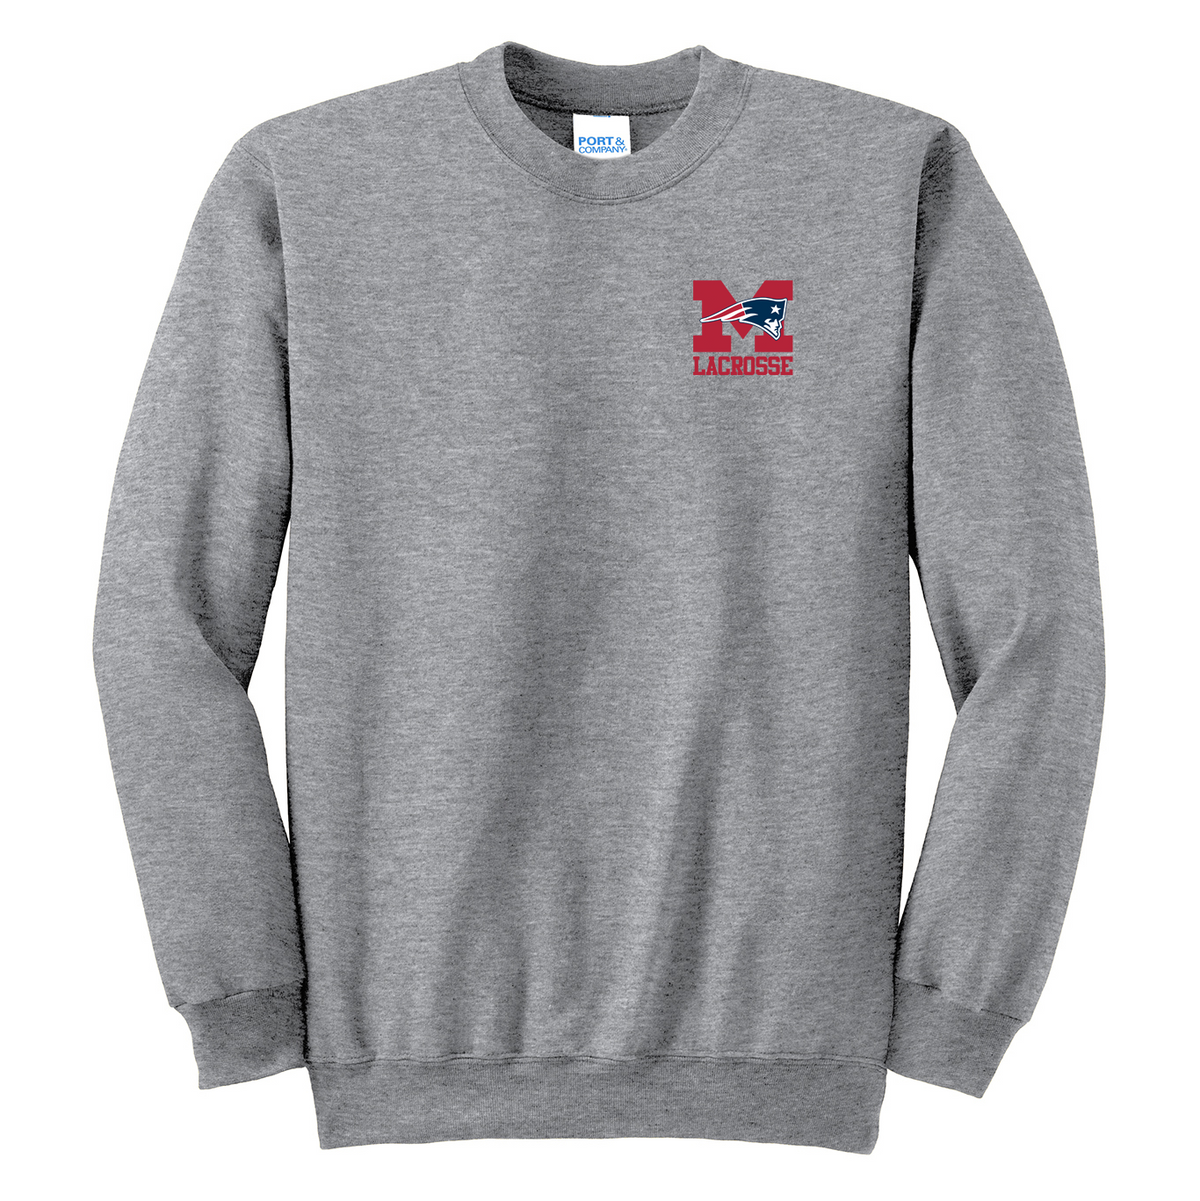 Metro Christian Lacrosse Crew Neck Sweater